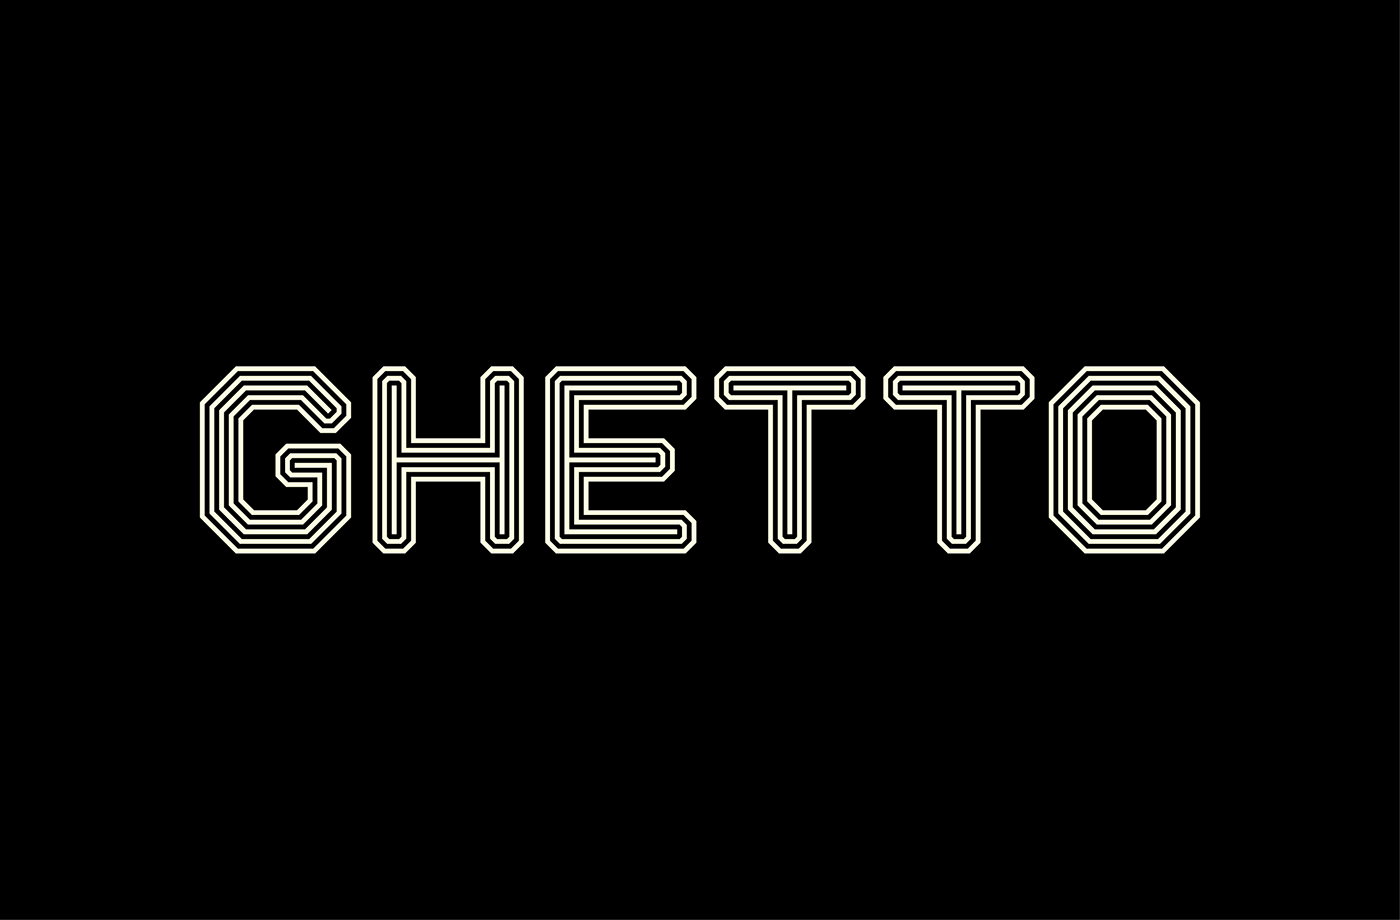 Ghetto Logo - Ghetto - A Display Typeface on Behance